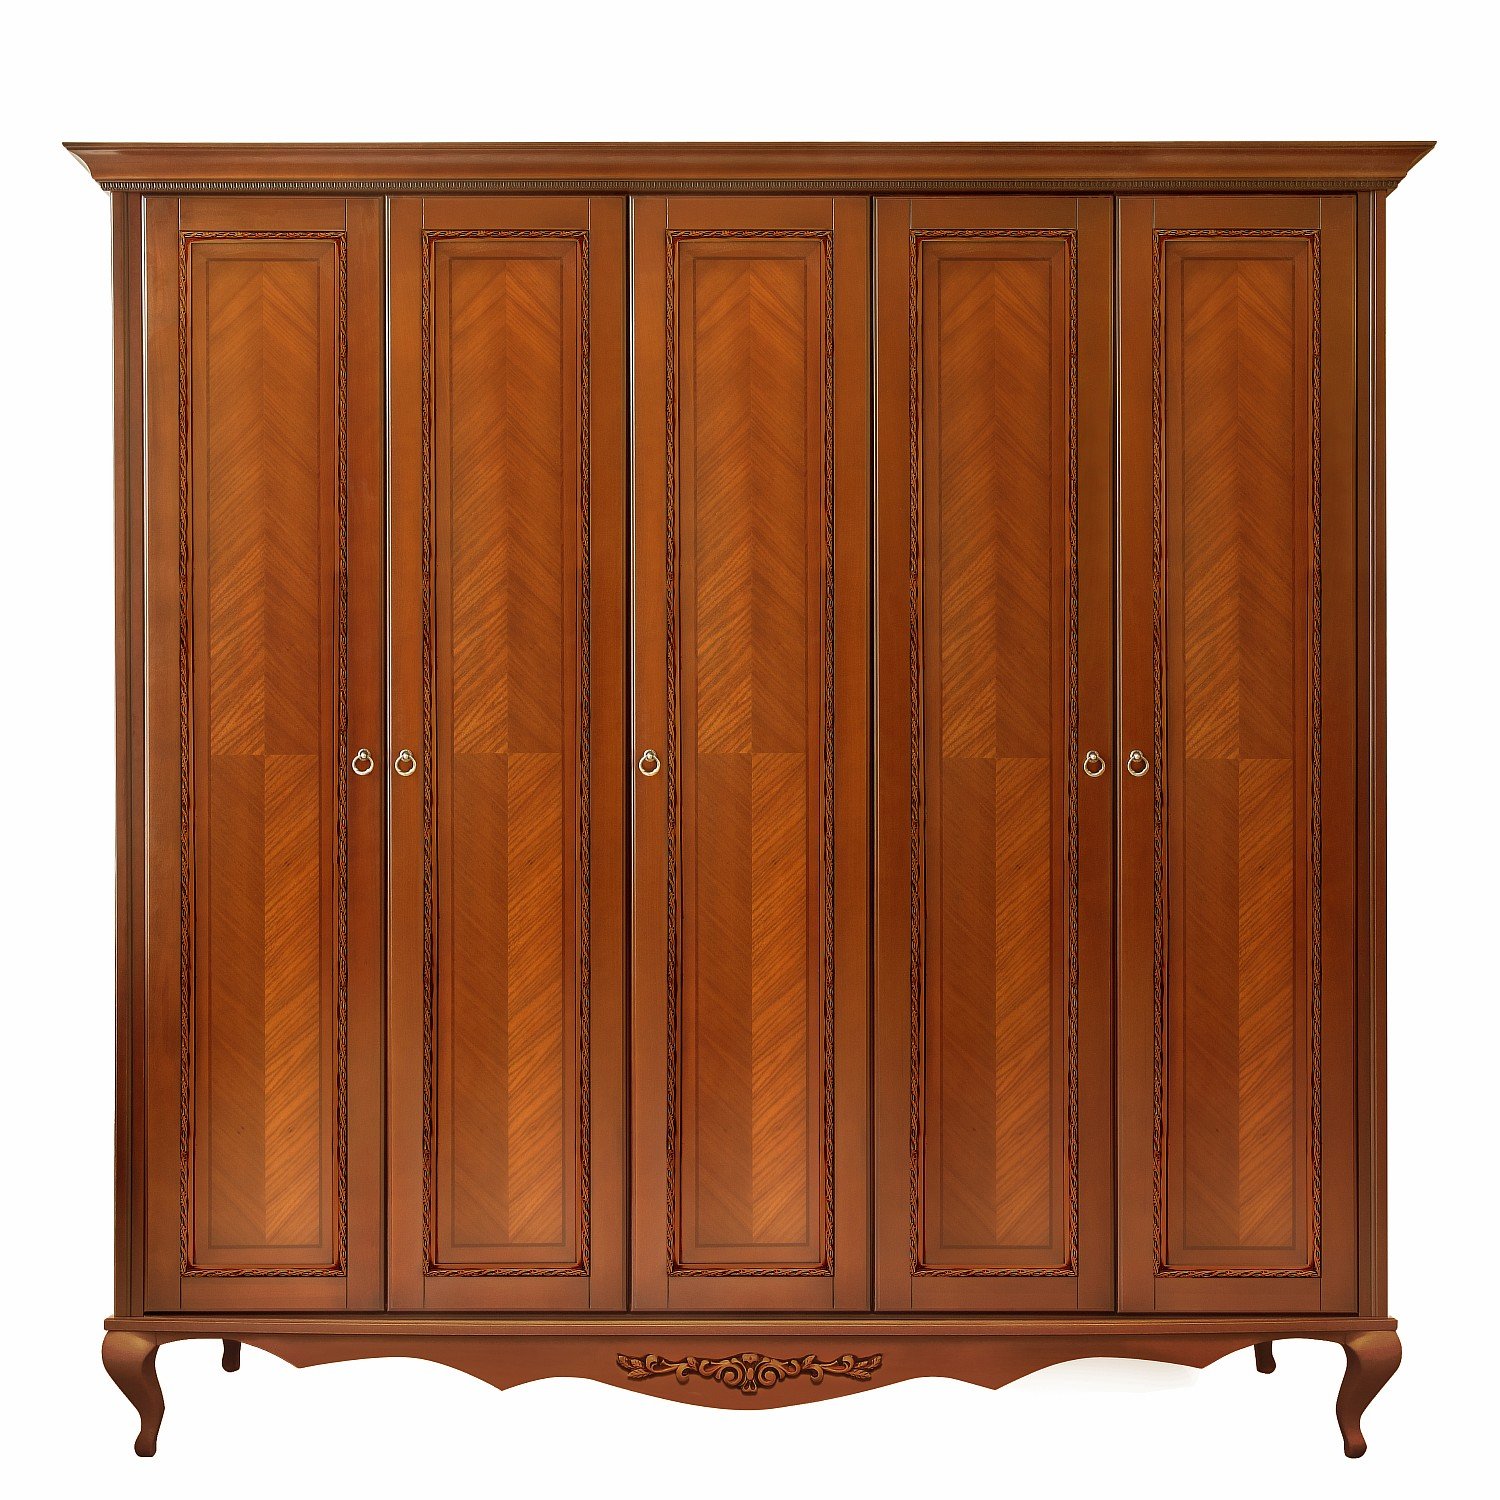 Шкаф платяной Timber Неаполь, 5-ти дверный 249x65x227 см, цвет: янтарь (Т-525Д/Y)Т-525Д